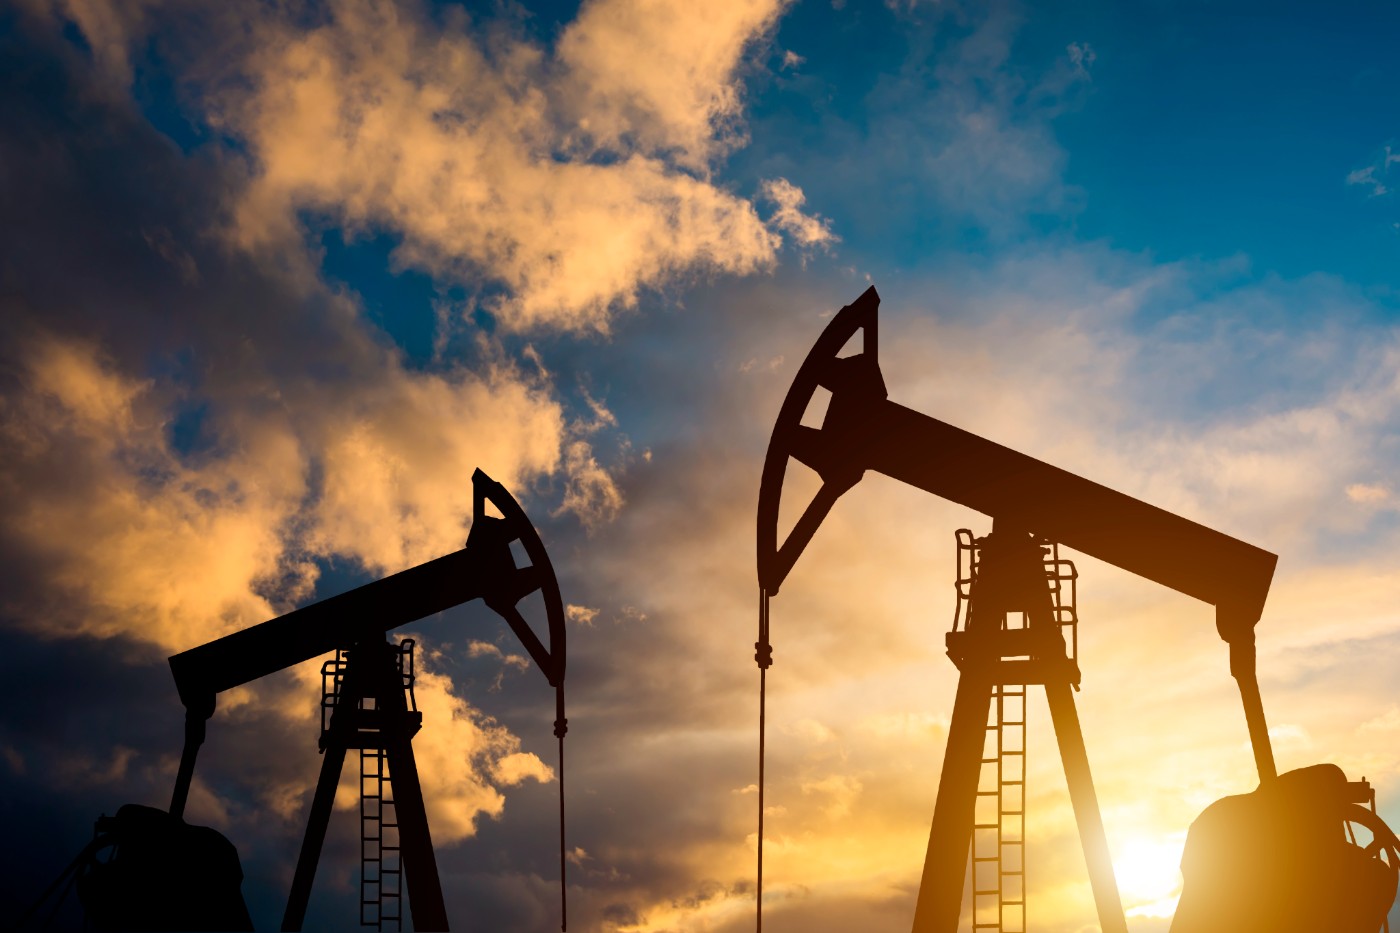 Πετρέλαιο - IEA: Πτώση σχεδόν 50% της παγκόσμιας ζήτησης και υπερπροσφορά μαύρου χρυσού